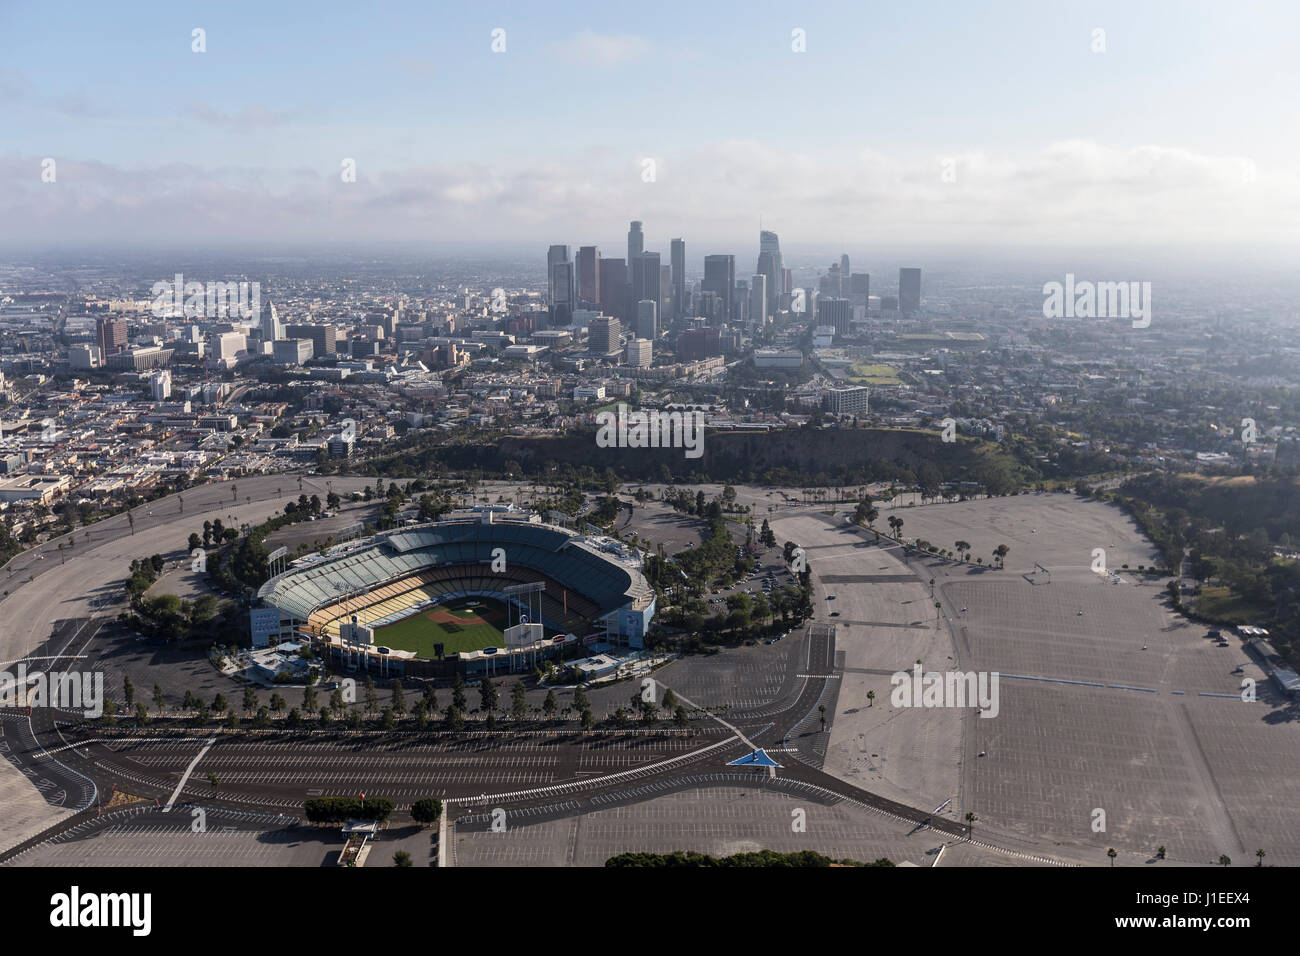 Los Angeles, Kalifornien, USA - 12. April 2017: Luftaufnahme des Dodger Stadium mit der Innenstadt von LA im Hintergrund. Stockfoto